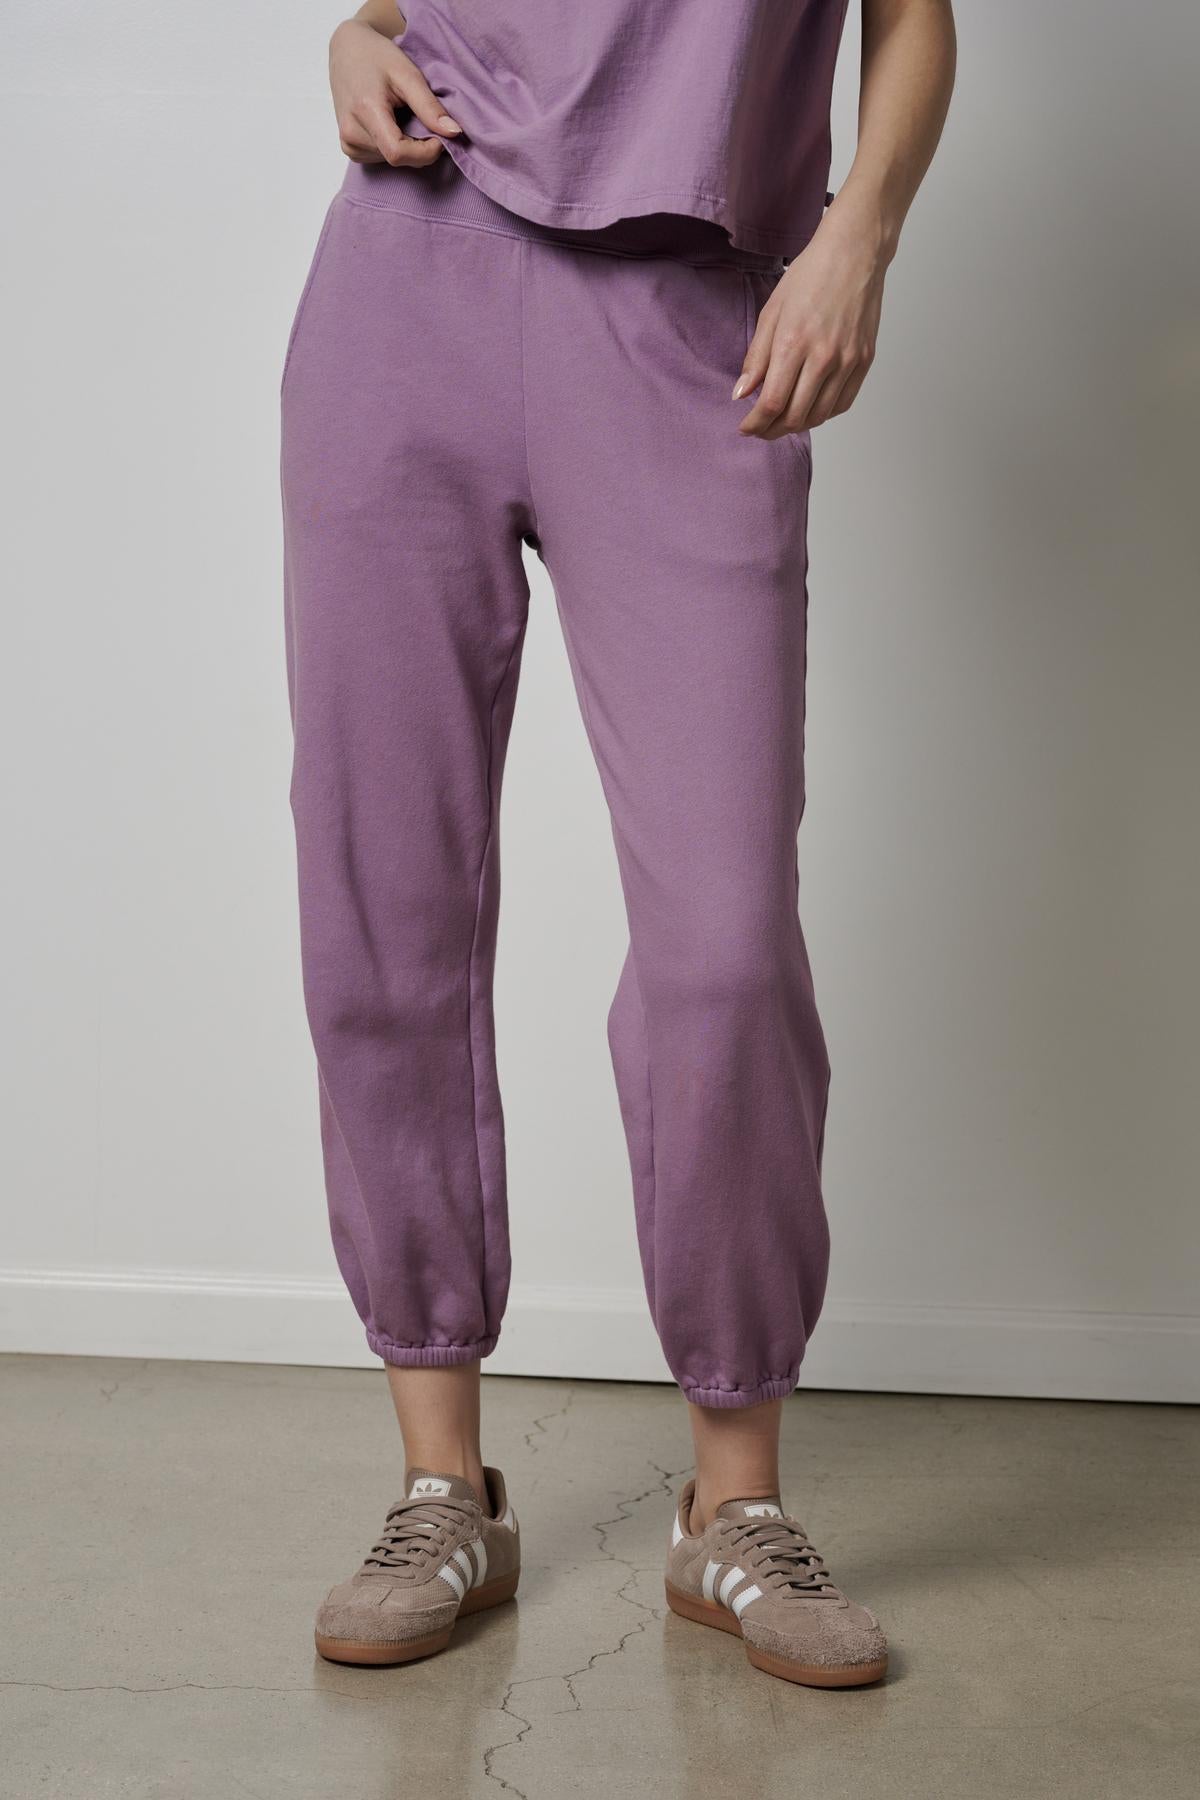   A woman wearing purple ZUMA sweatpants and sneakers. 